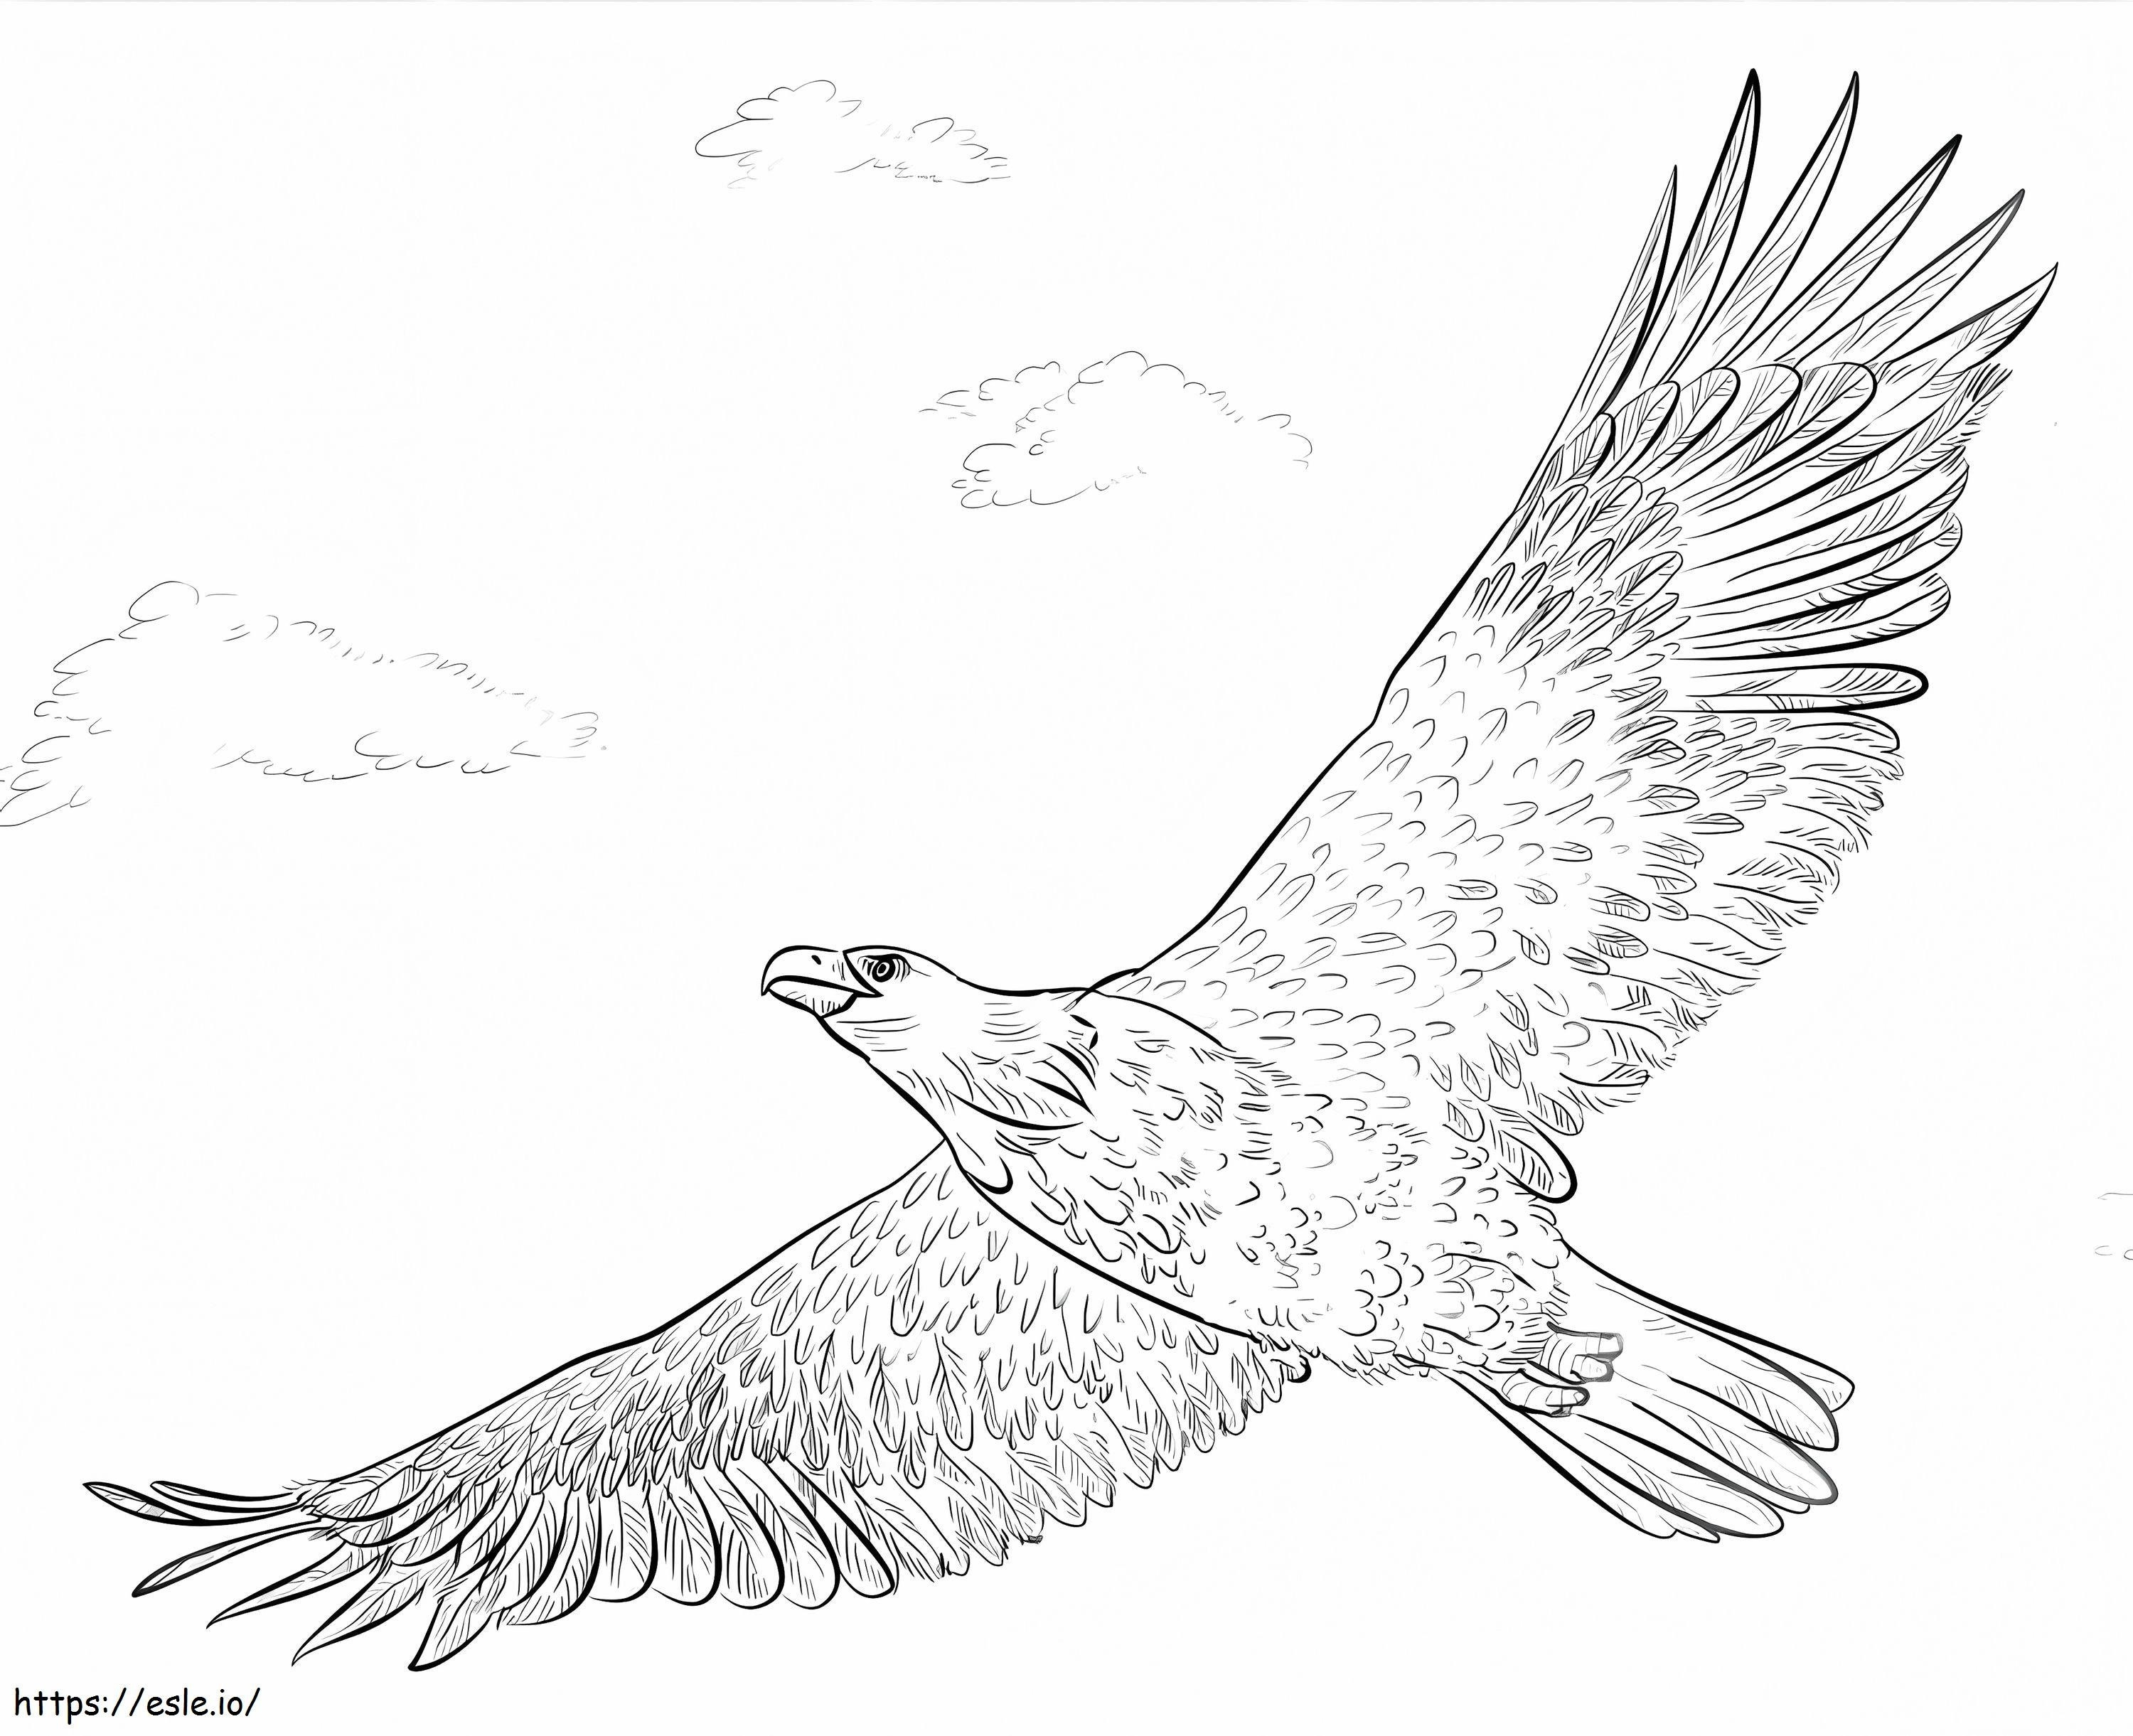 Aquila calva in volo da colorare